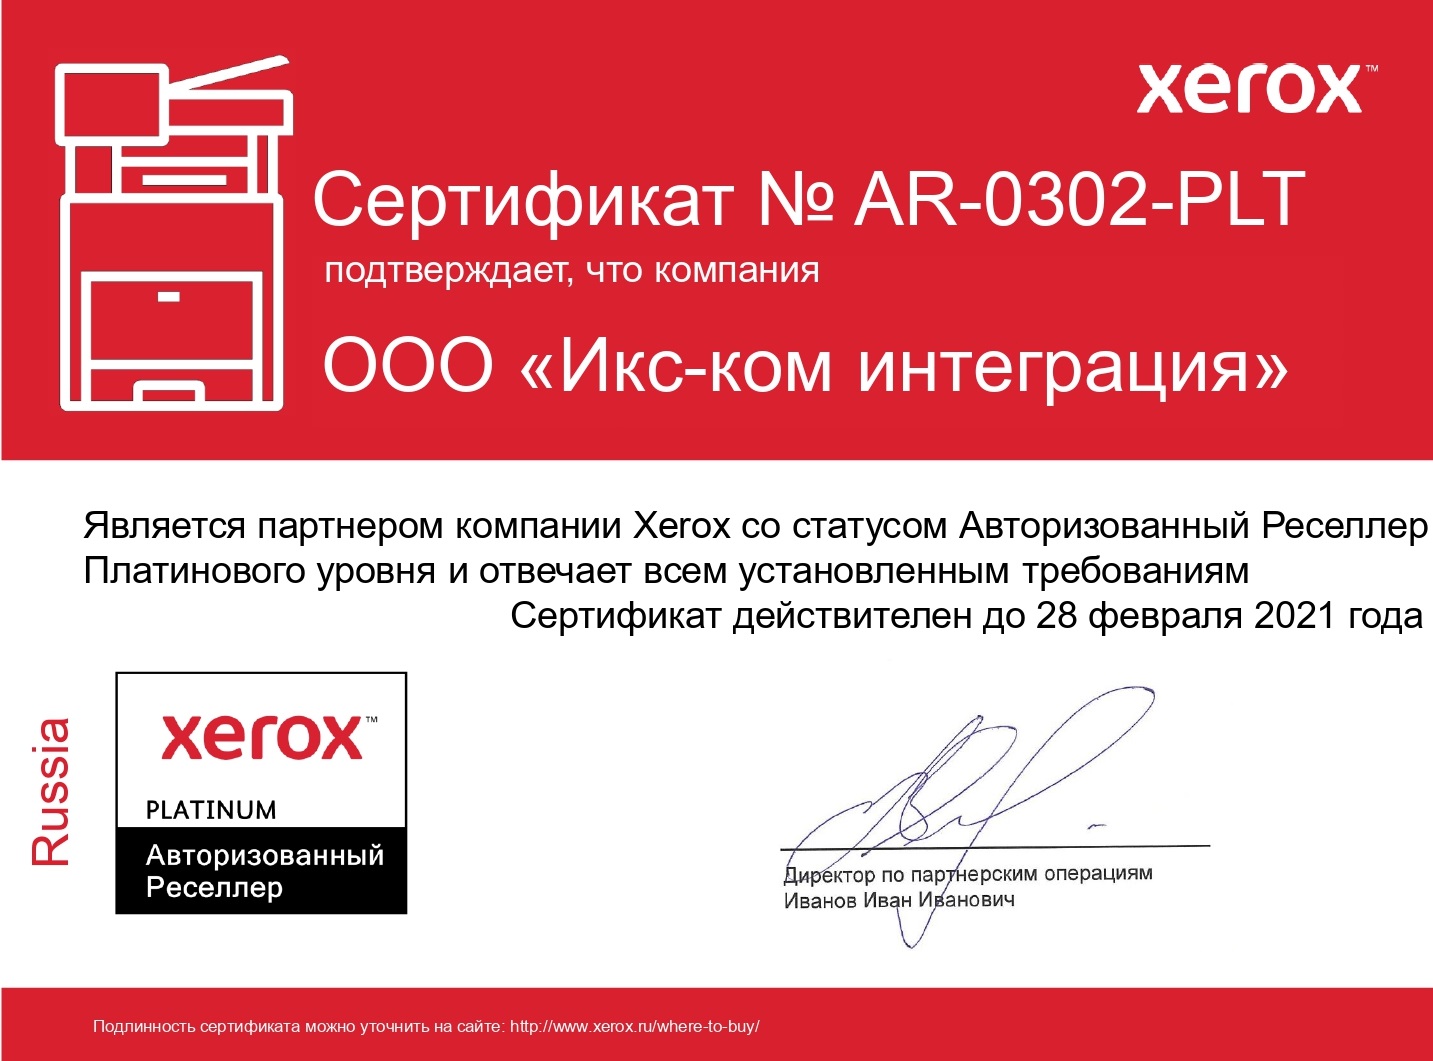 X-Com получила высший партнерский статус Xerox